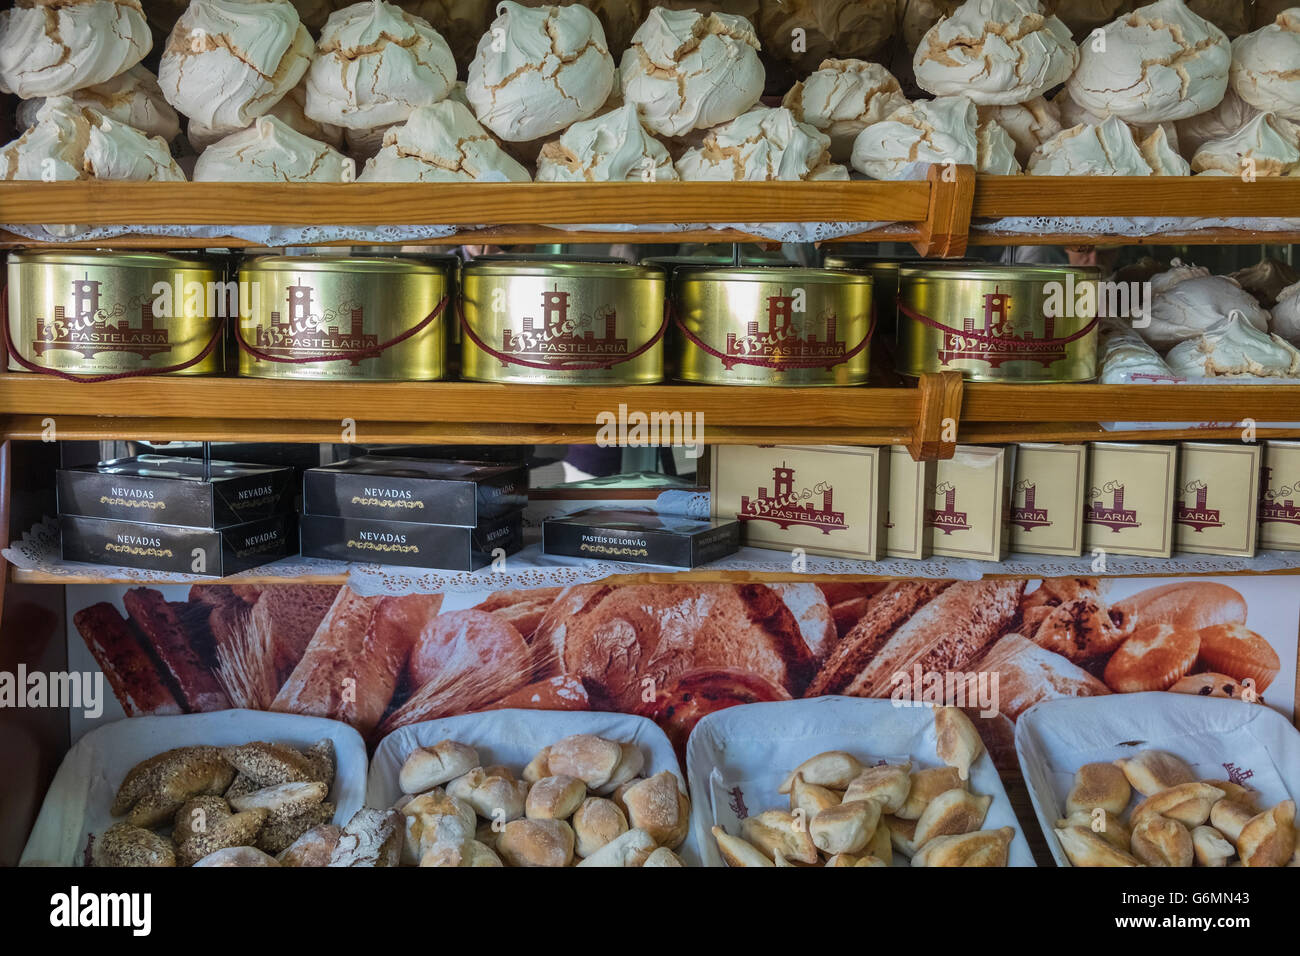 Pane e dolci sul display in un panificio negozio, Coimbra, Portogallo Foto Stock